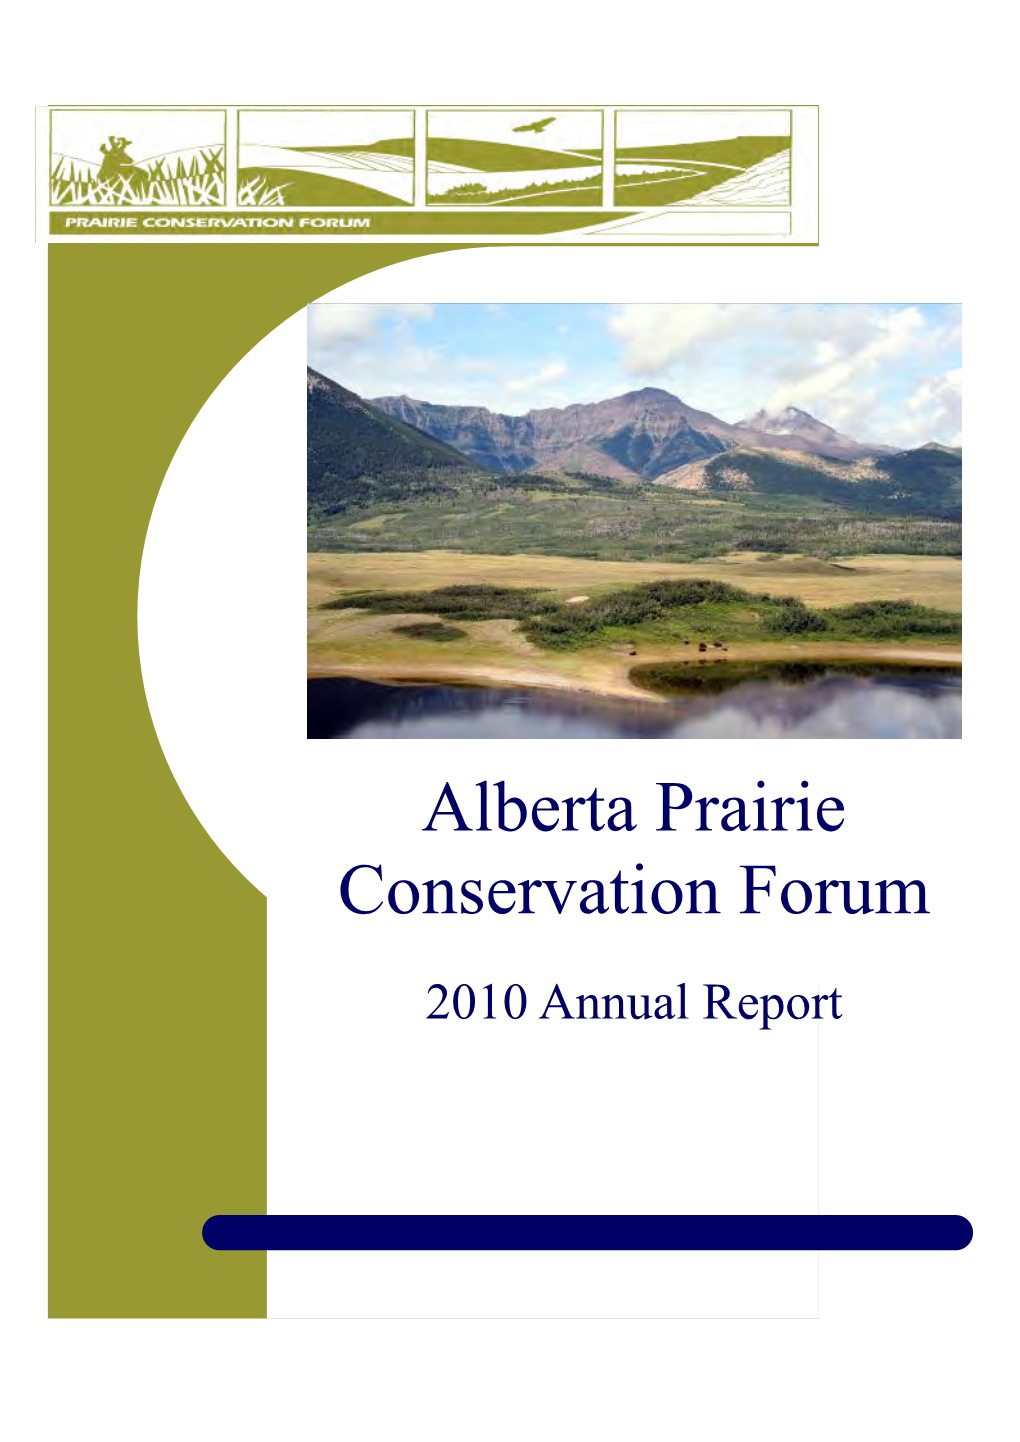 PCF 2010 Annual Report